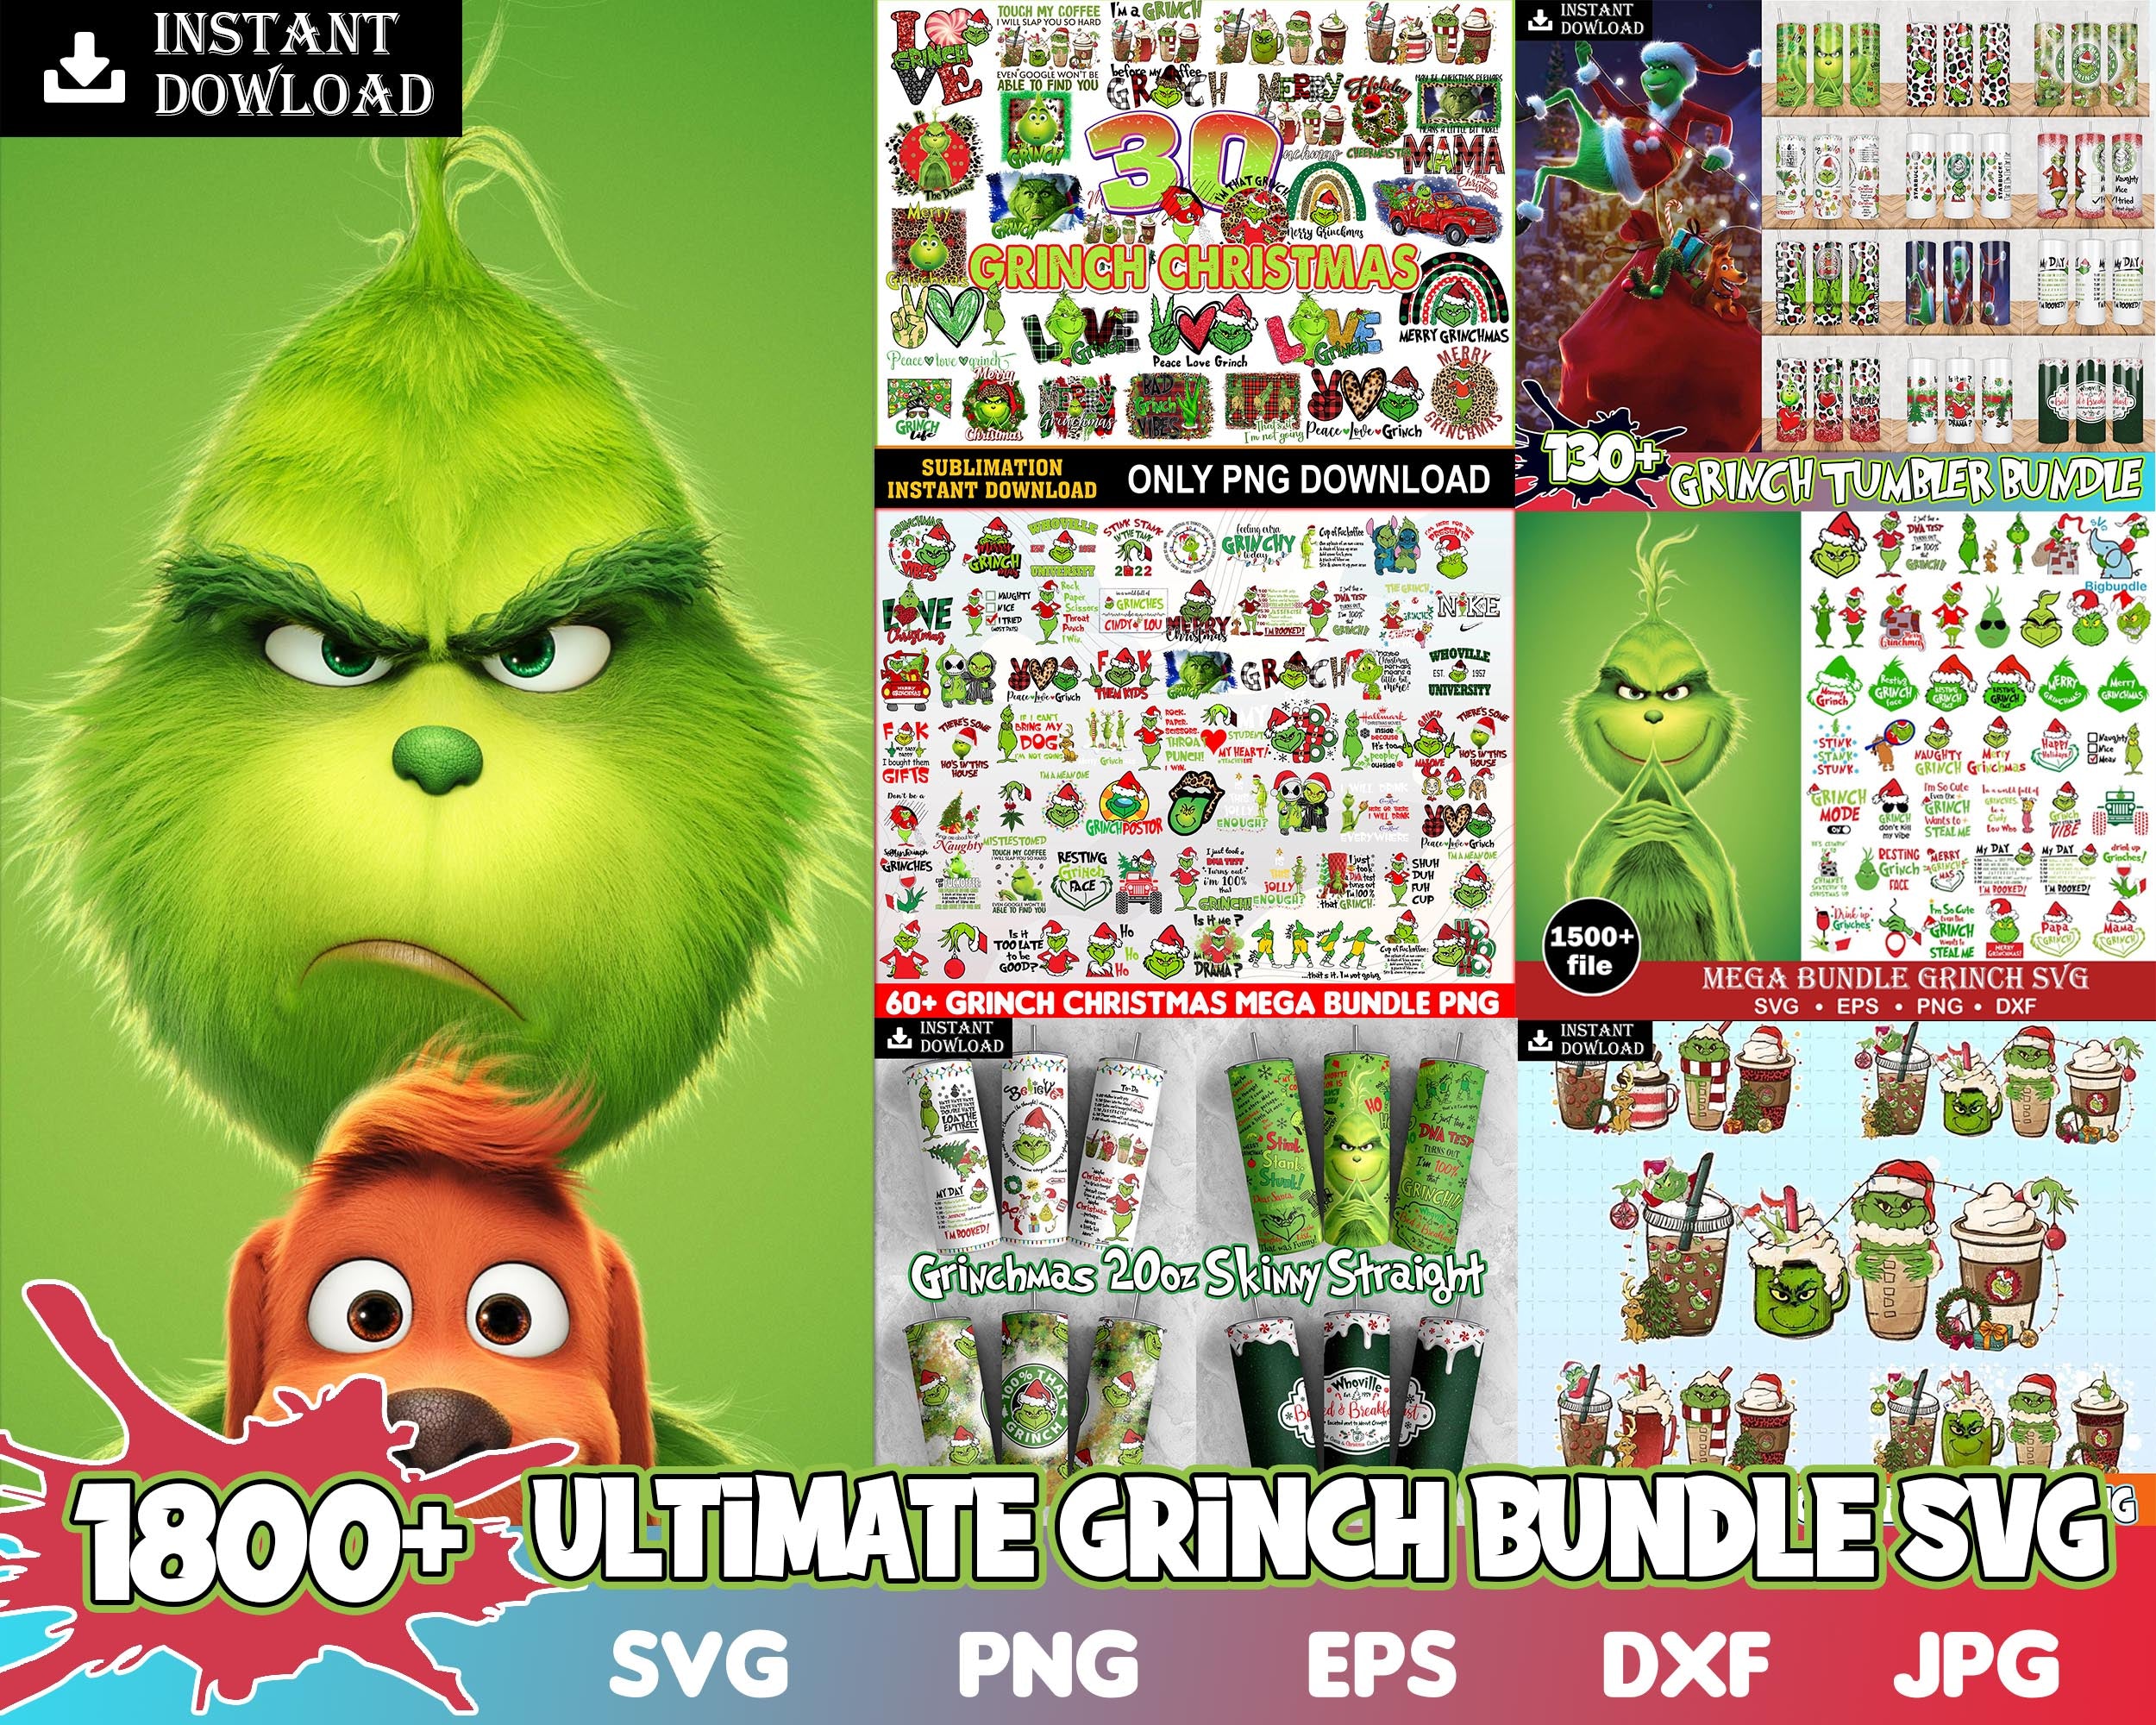 1800+ Ultimate Grinch Bundle SVG, Grinch SVG, Grinch Cutting Image, Christmas Grinch svg png eps dxf jpg